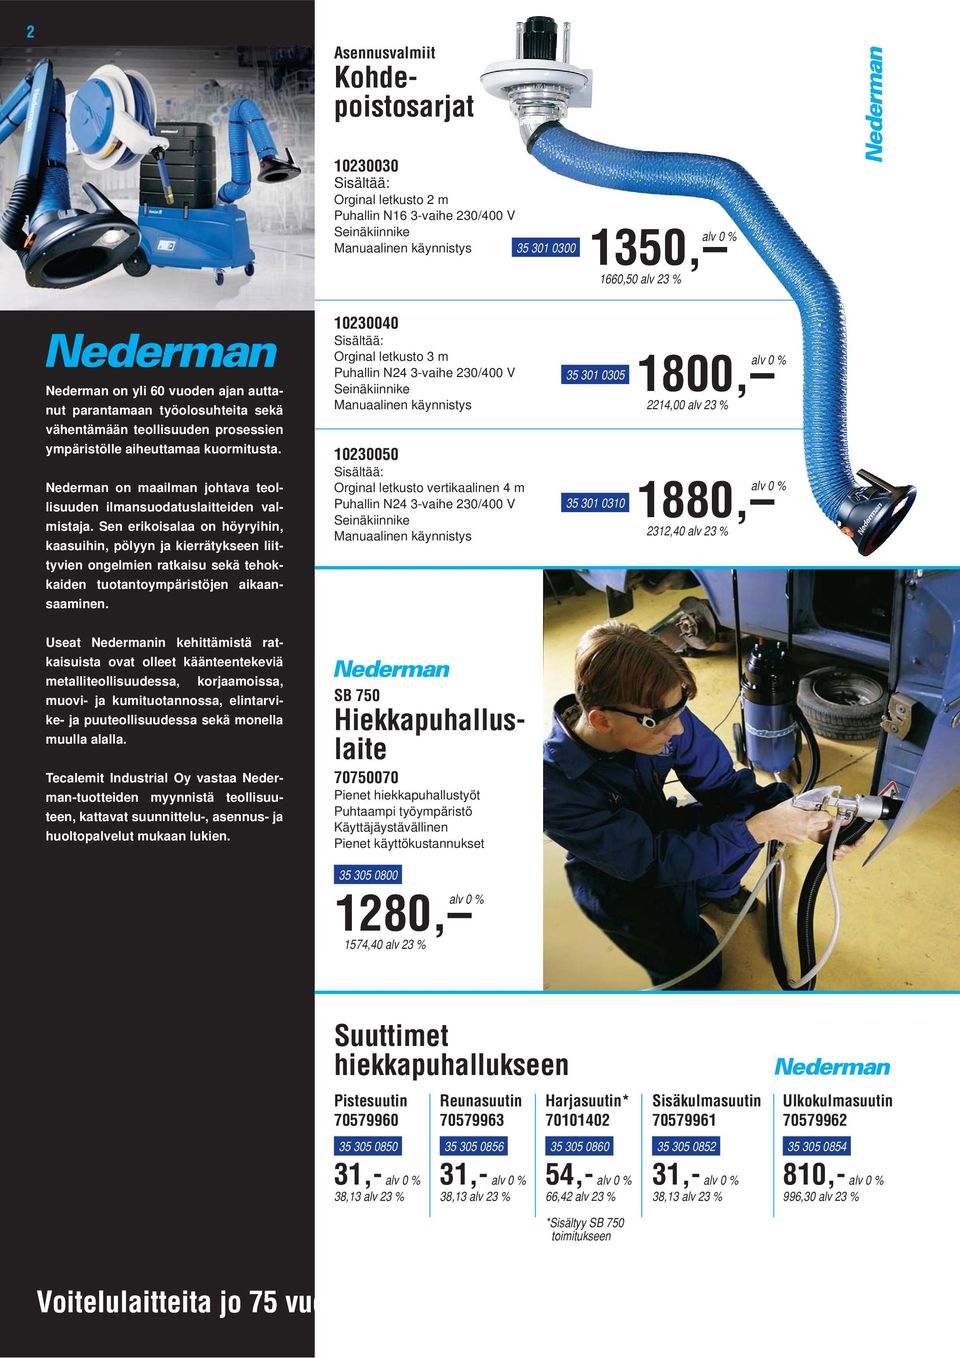 Nederman on maailman johtava teollisuuden ilmansuodatuslaitteiden valmistaja.